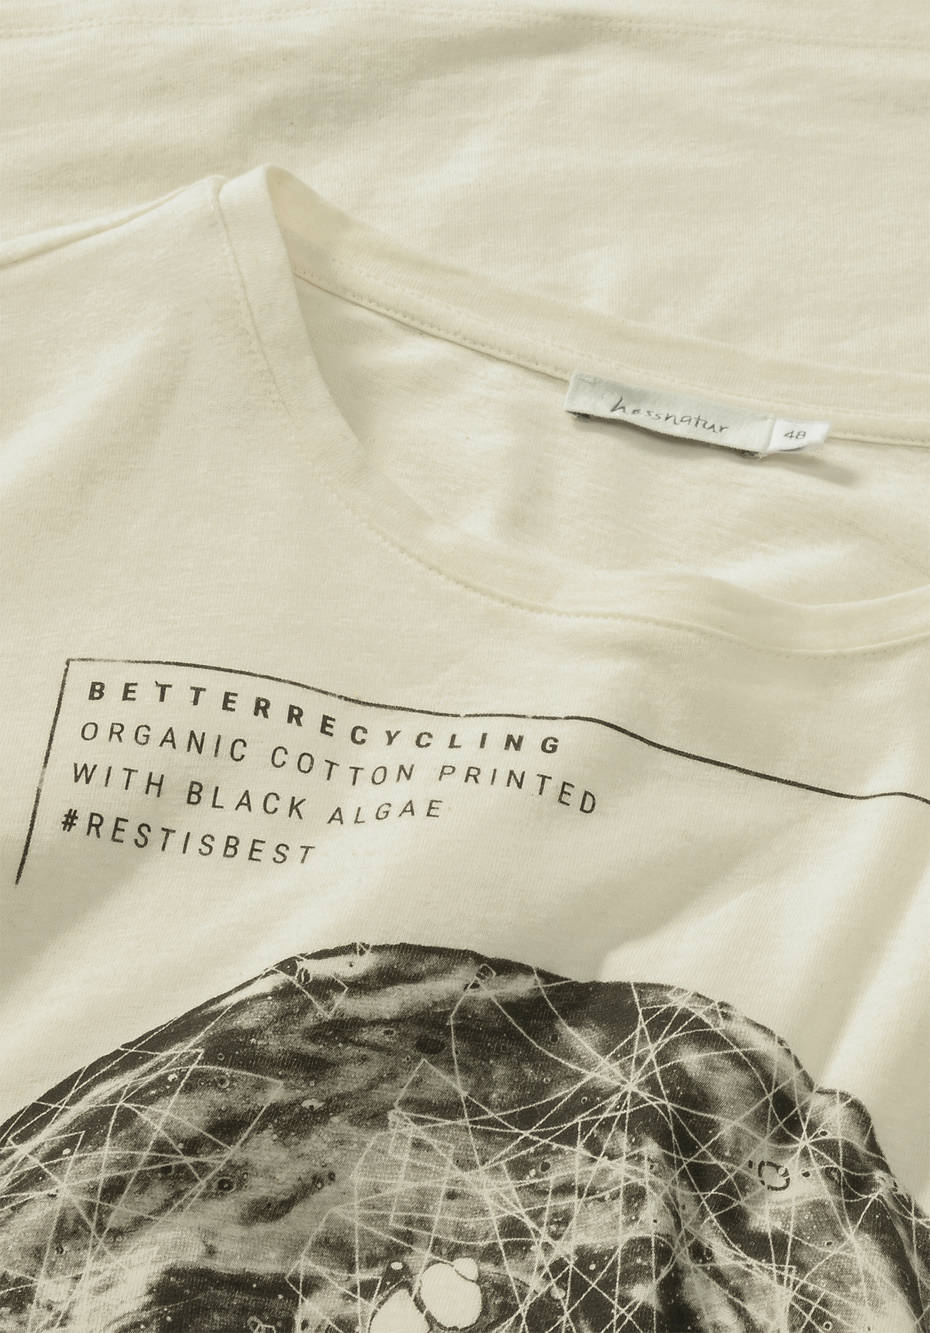 Statement T-Shirt aus reiner Bio-Baumwolle